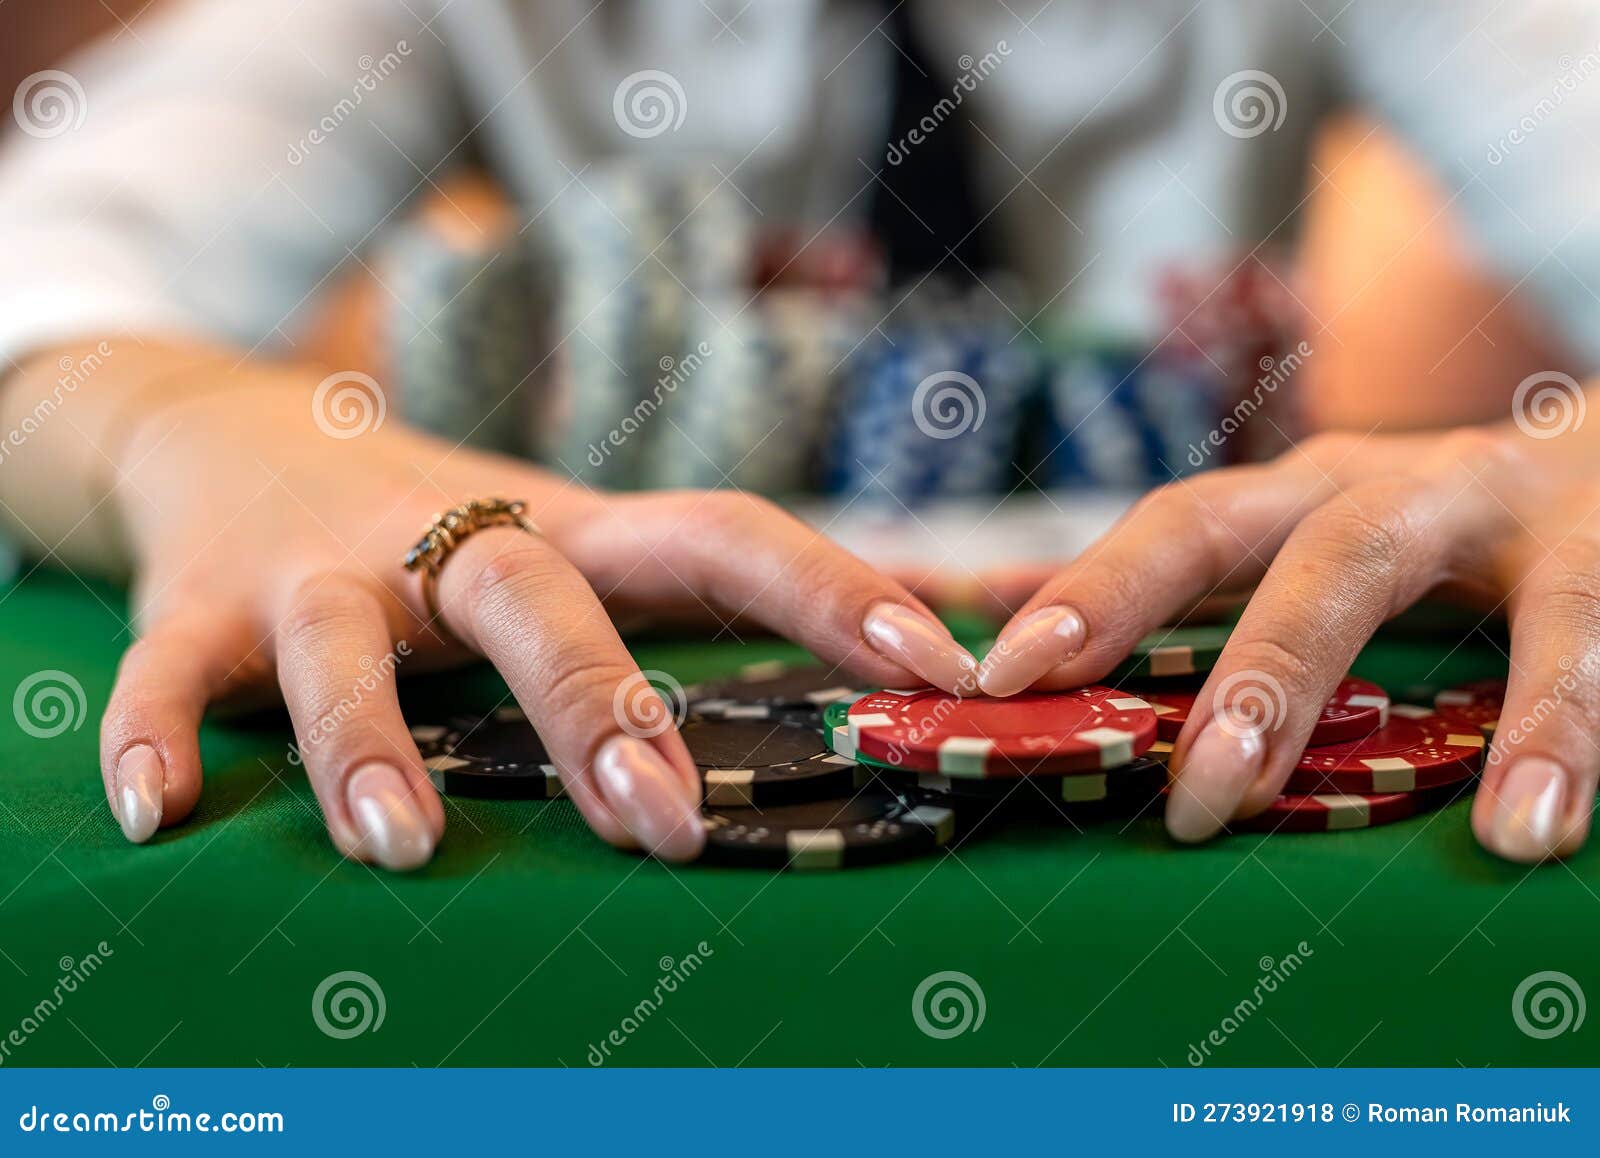 Emoción en las mesas de póquer